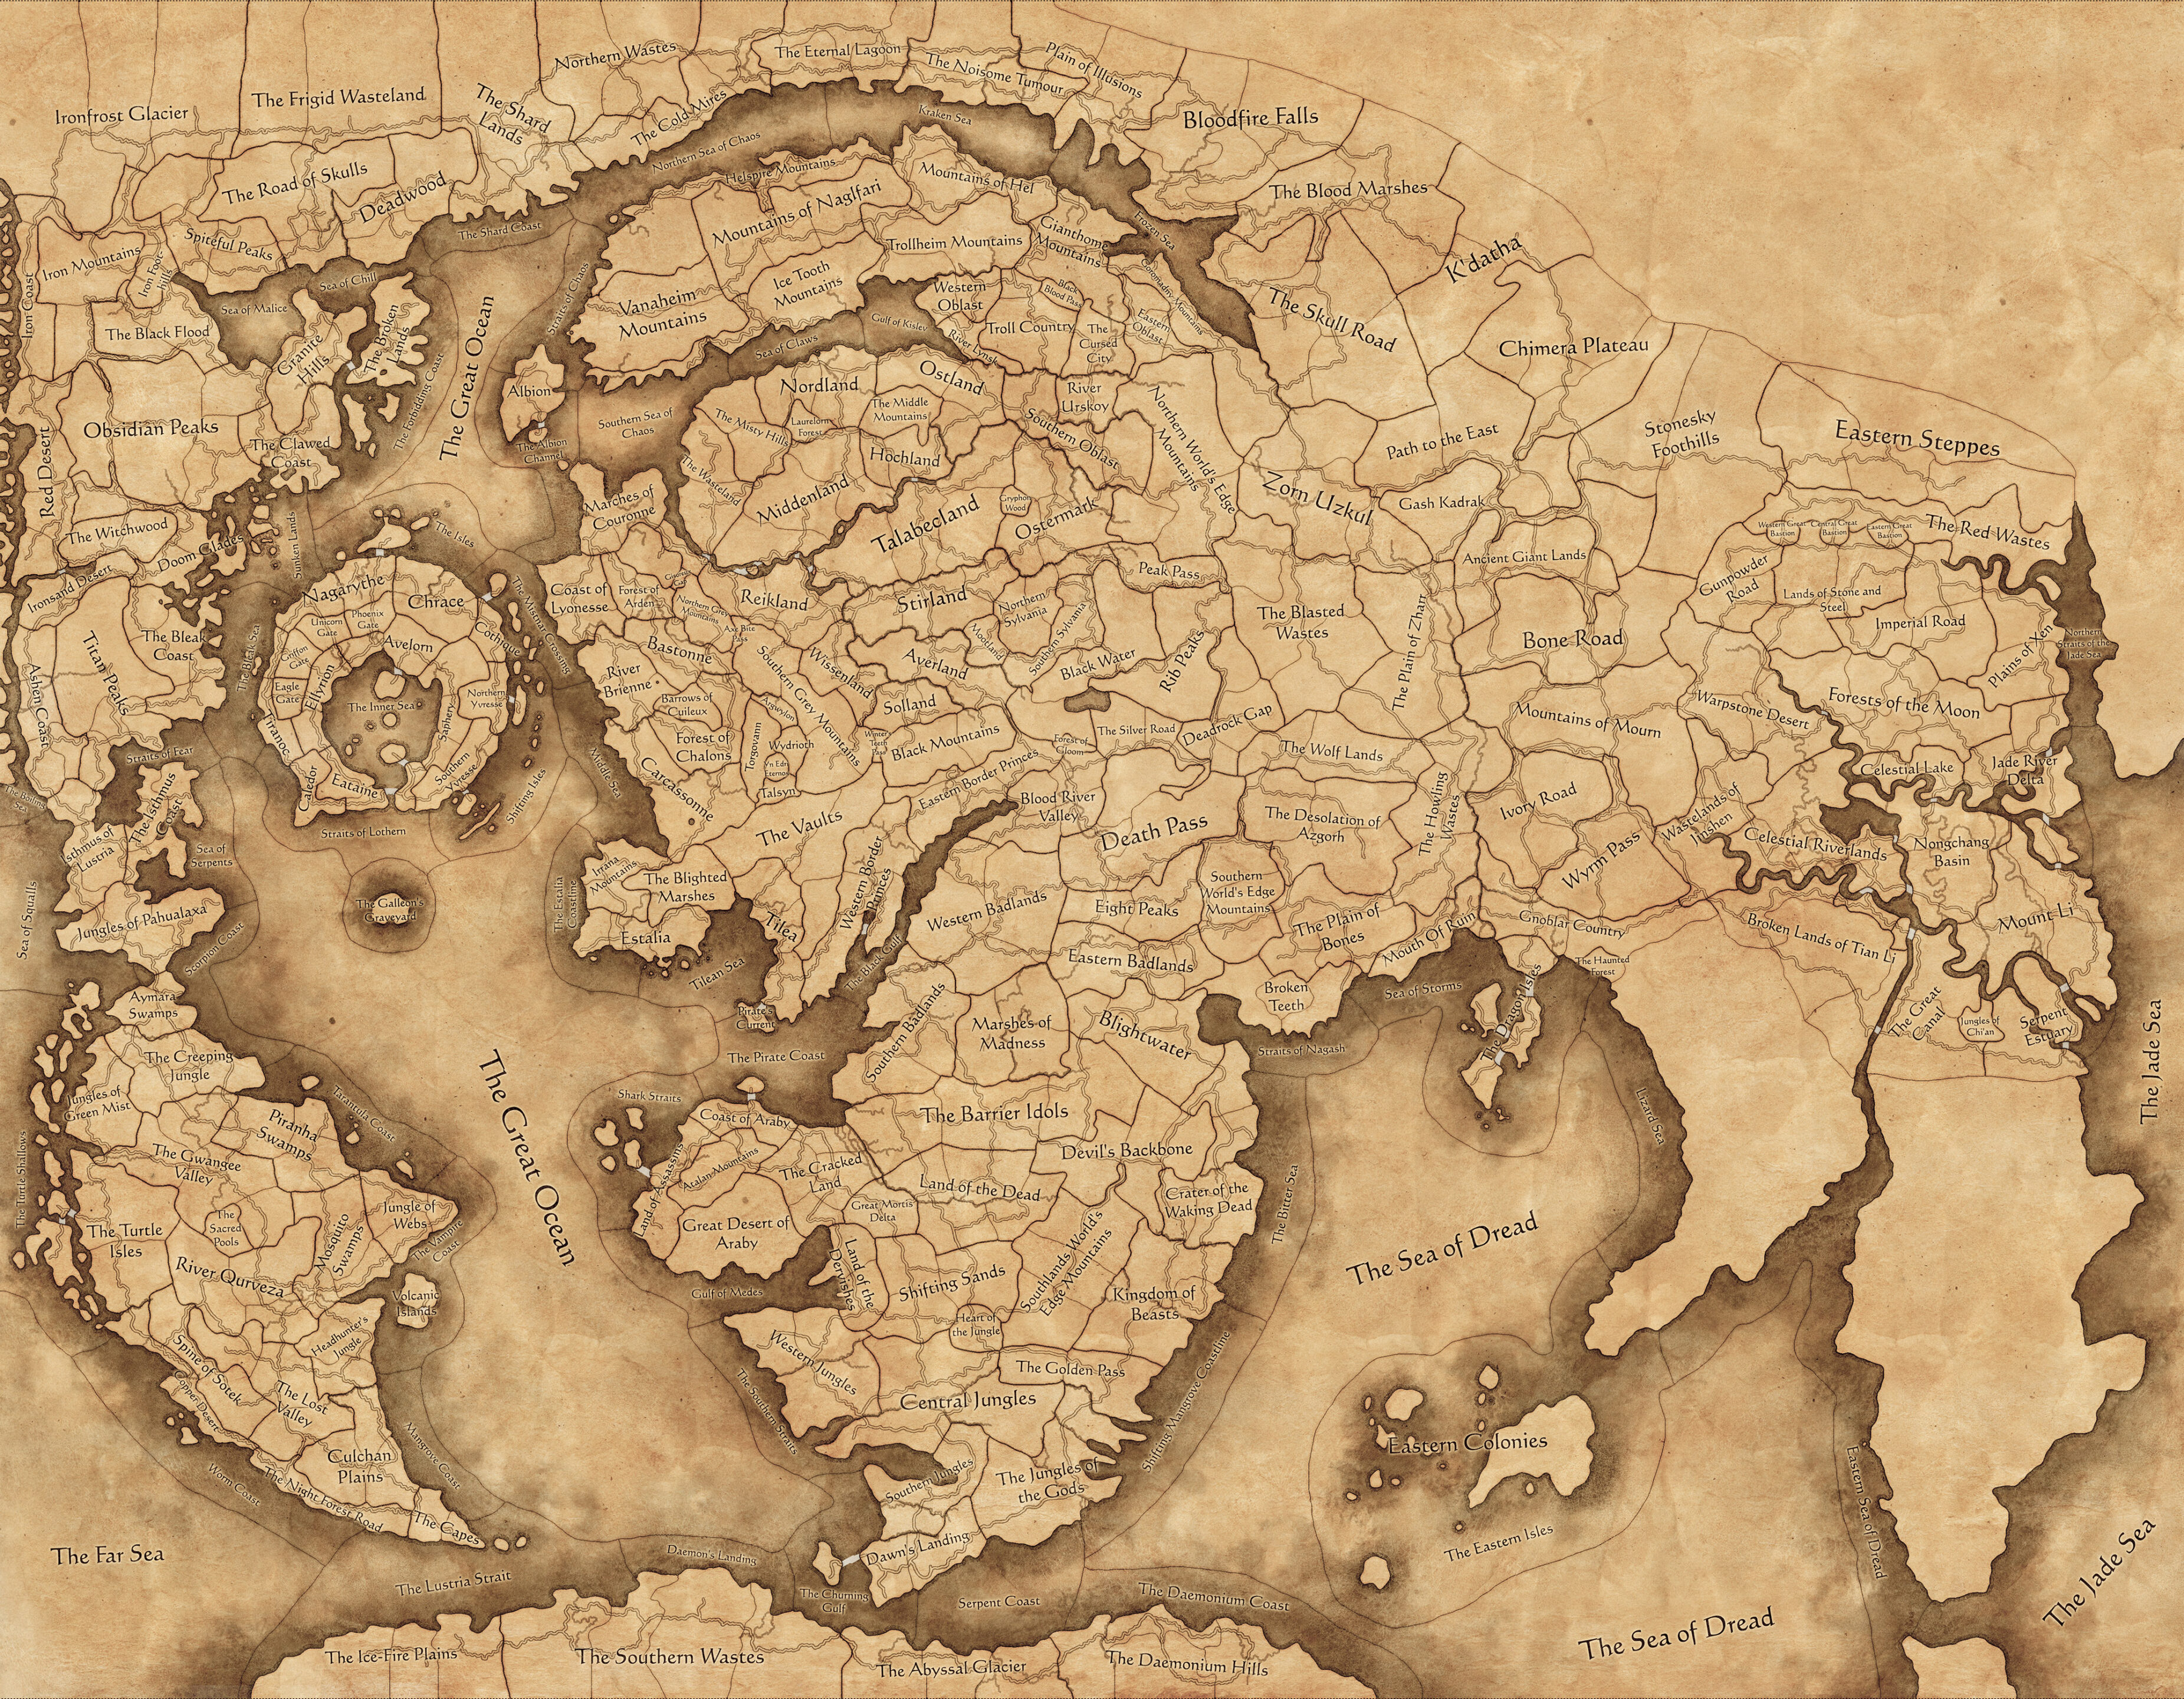 Μια εικόνα του συνολικού πολέμου: Warhammer III αθάνατη αυτοκρατορία χάρτη παιχνιδιών, που εκτείνεται σε μεγάλο μέρος του Warhammer World